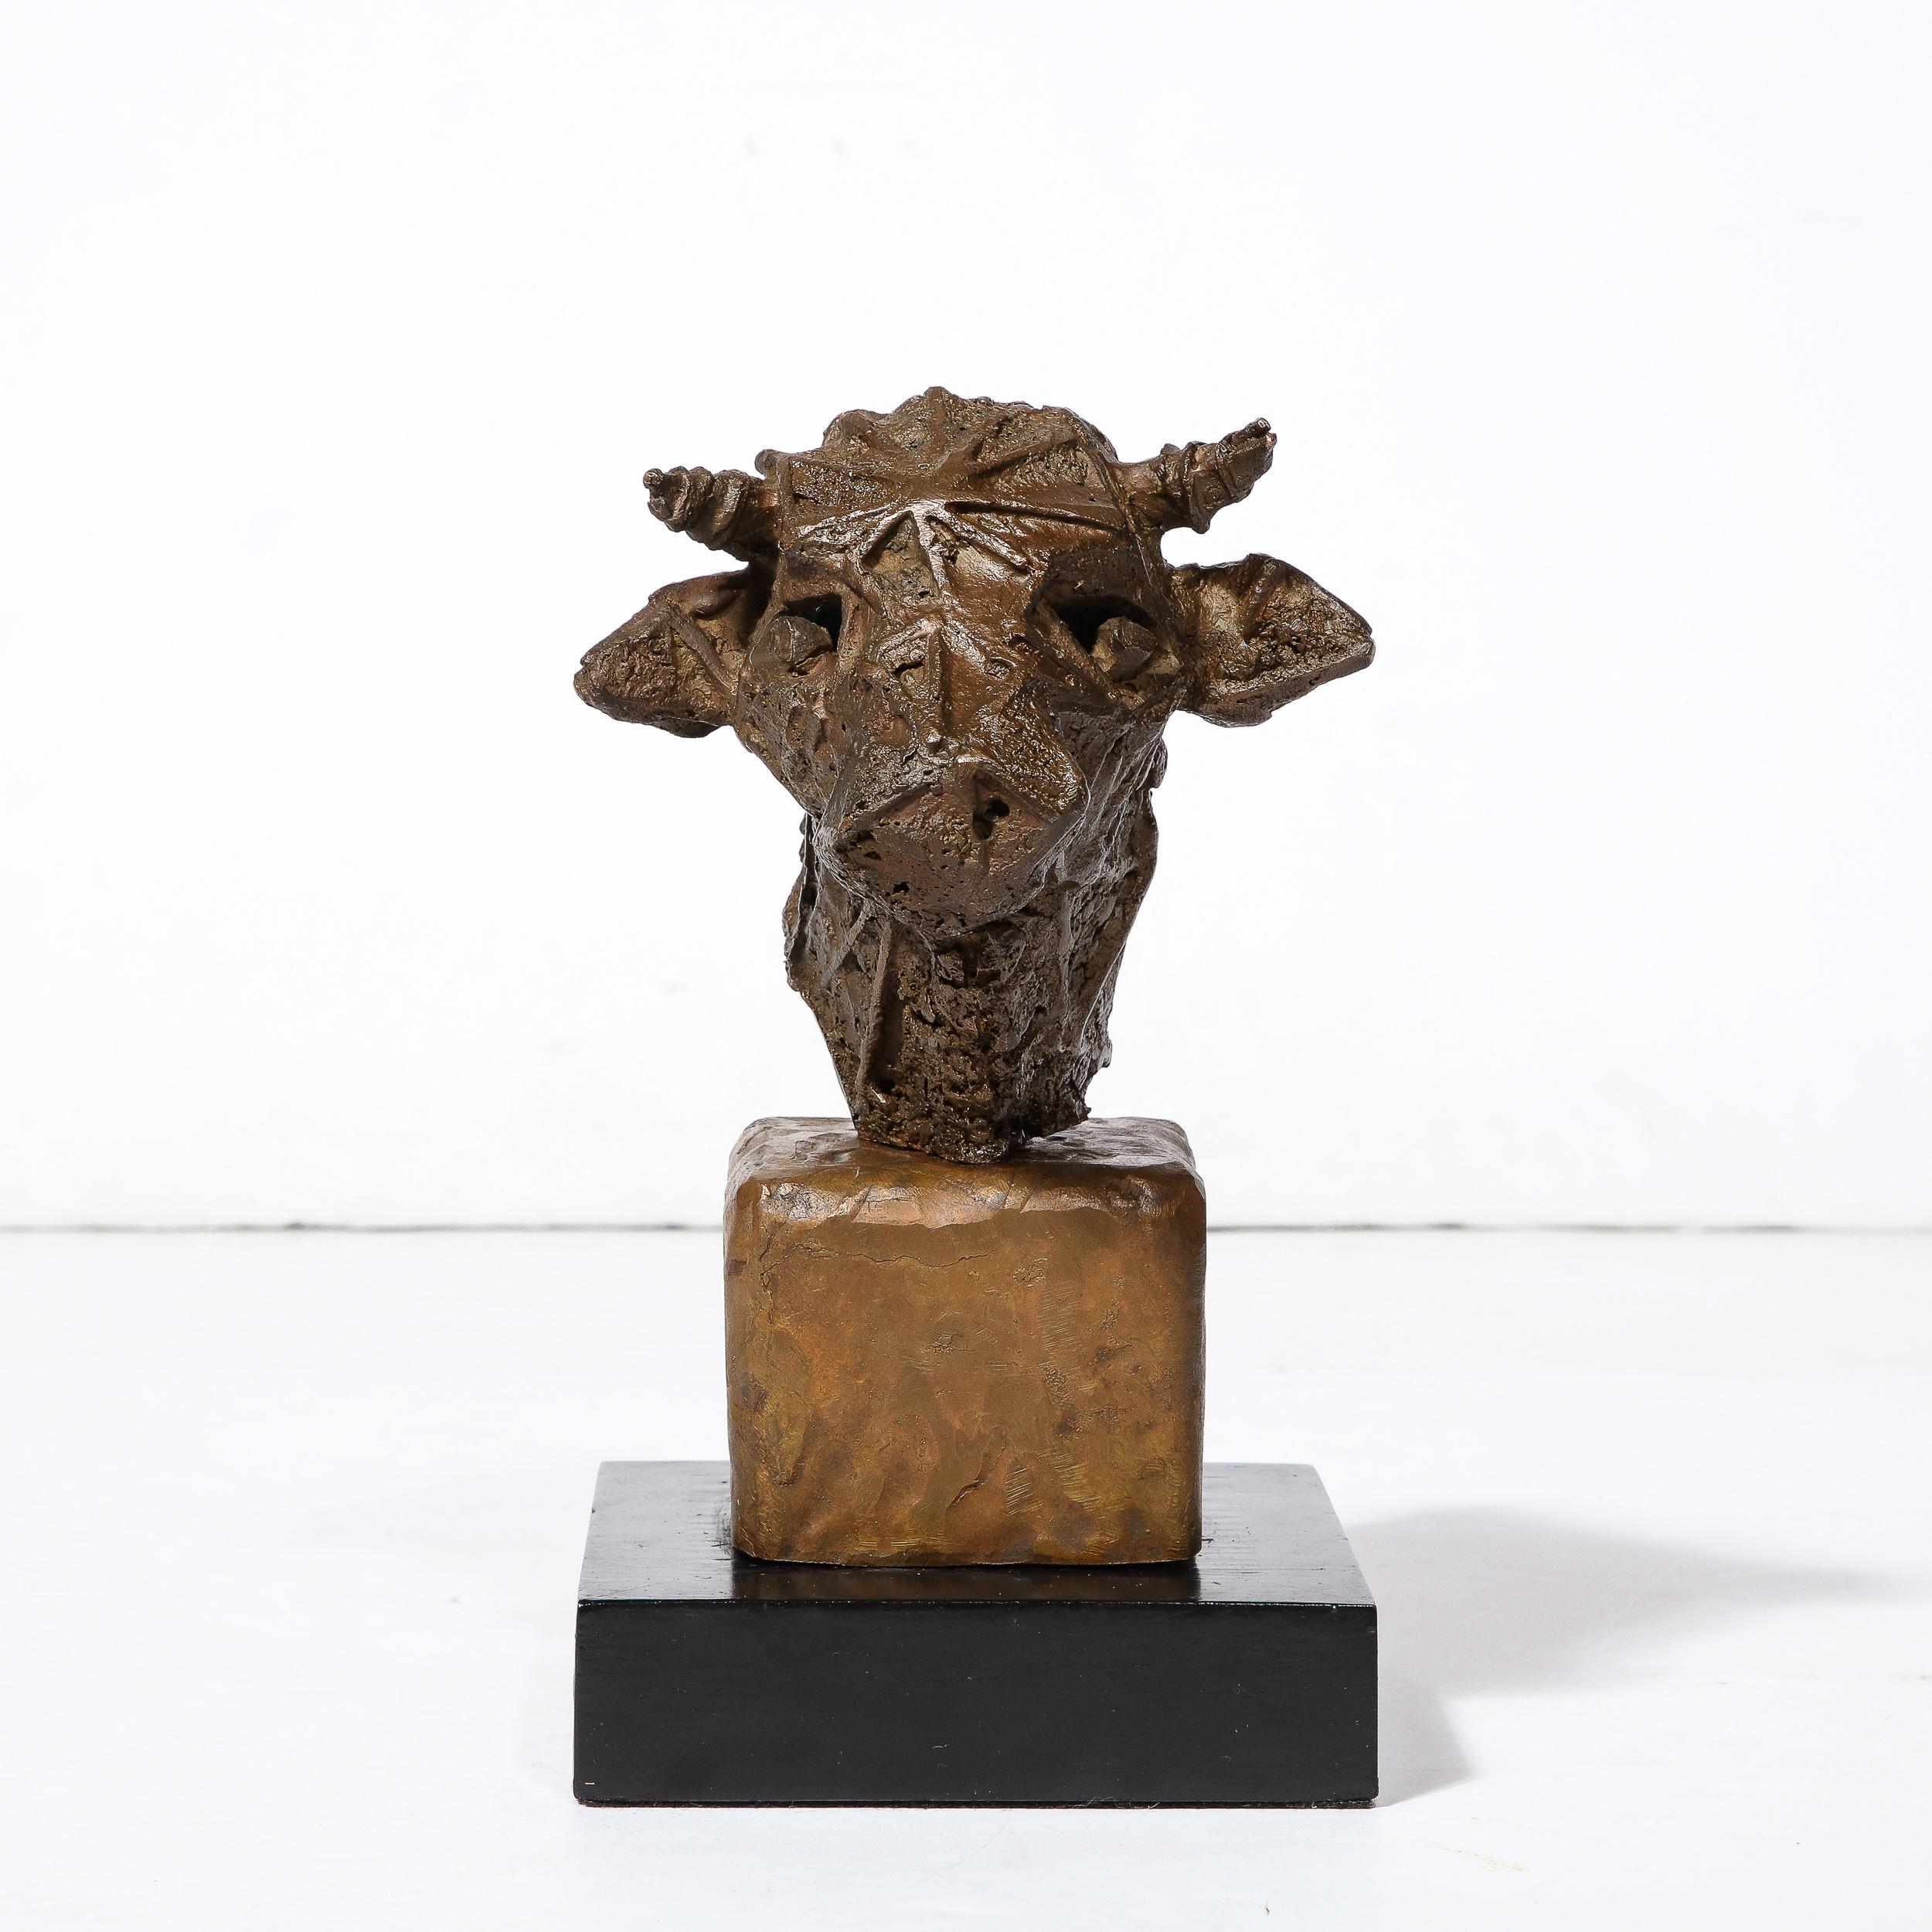 Cette intrigante et ludique sculpture de tête de taureau brutaliste signée Vlademar Valutis provient de Suède et a été créée en 1974. Avec une tête de taureau stylisée et texturée sur une base rectiligne en deux parties, le fabricant utilise des